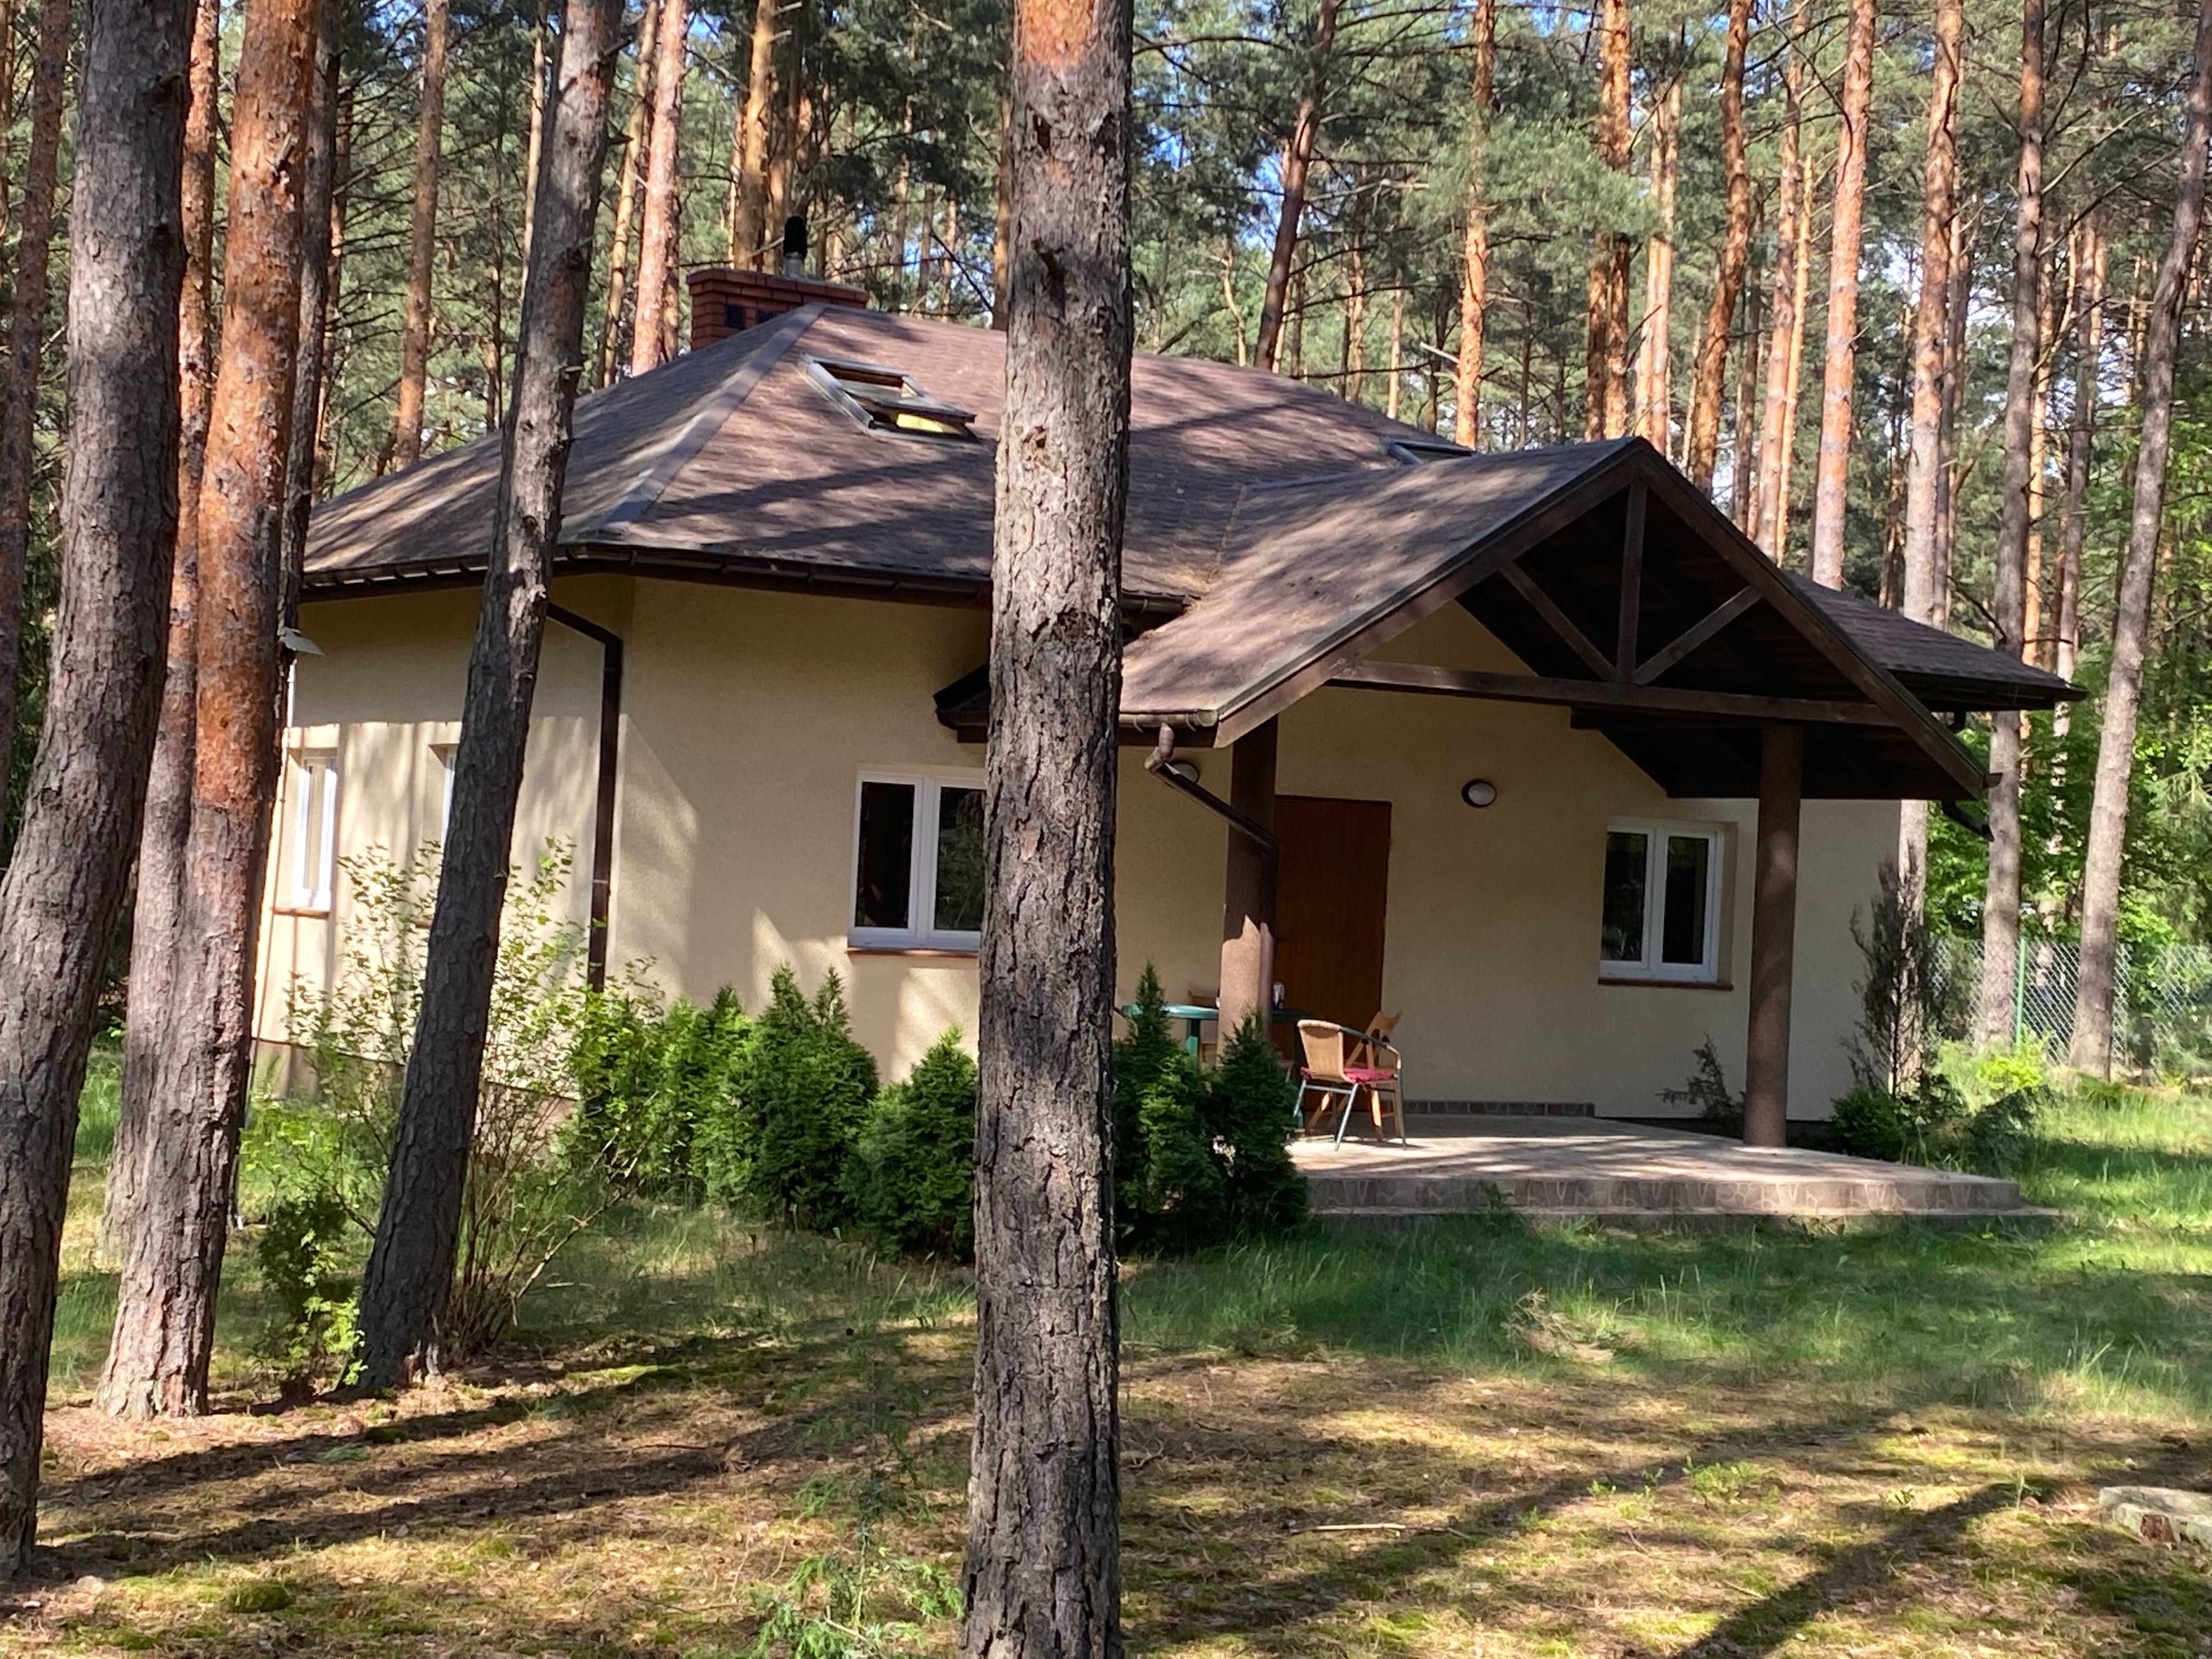 Pokoje dla pracowników w malowniczym domu w lesie Wyszków / Tłuszcz